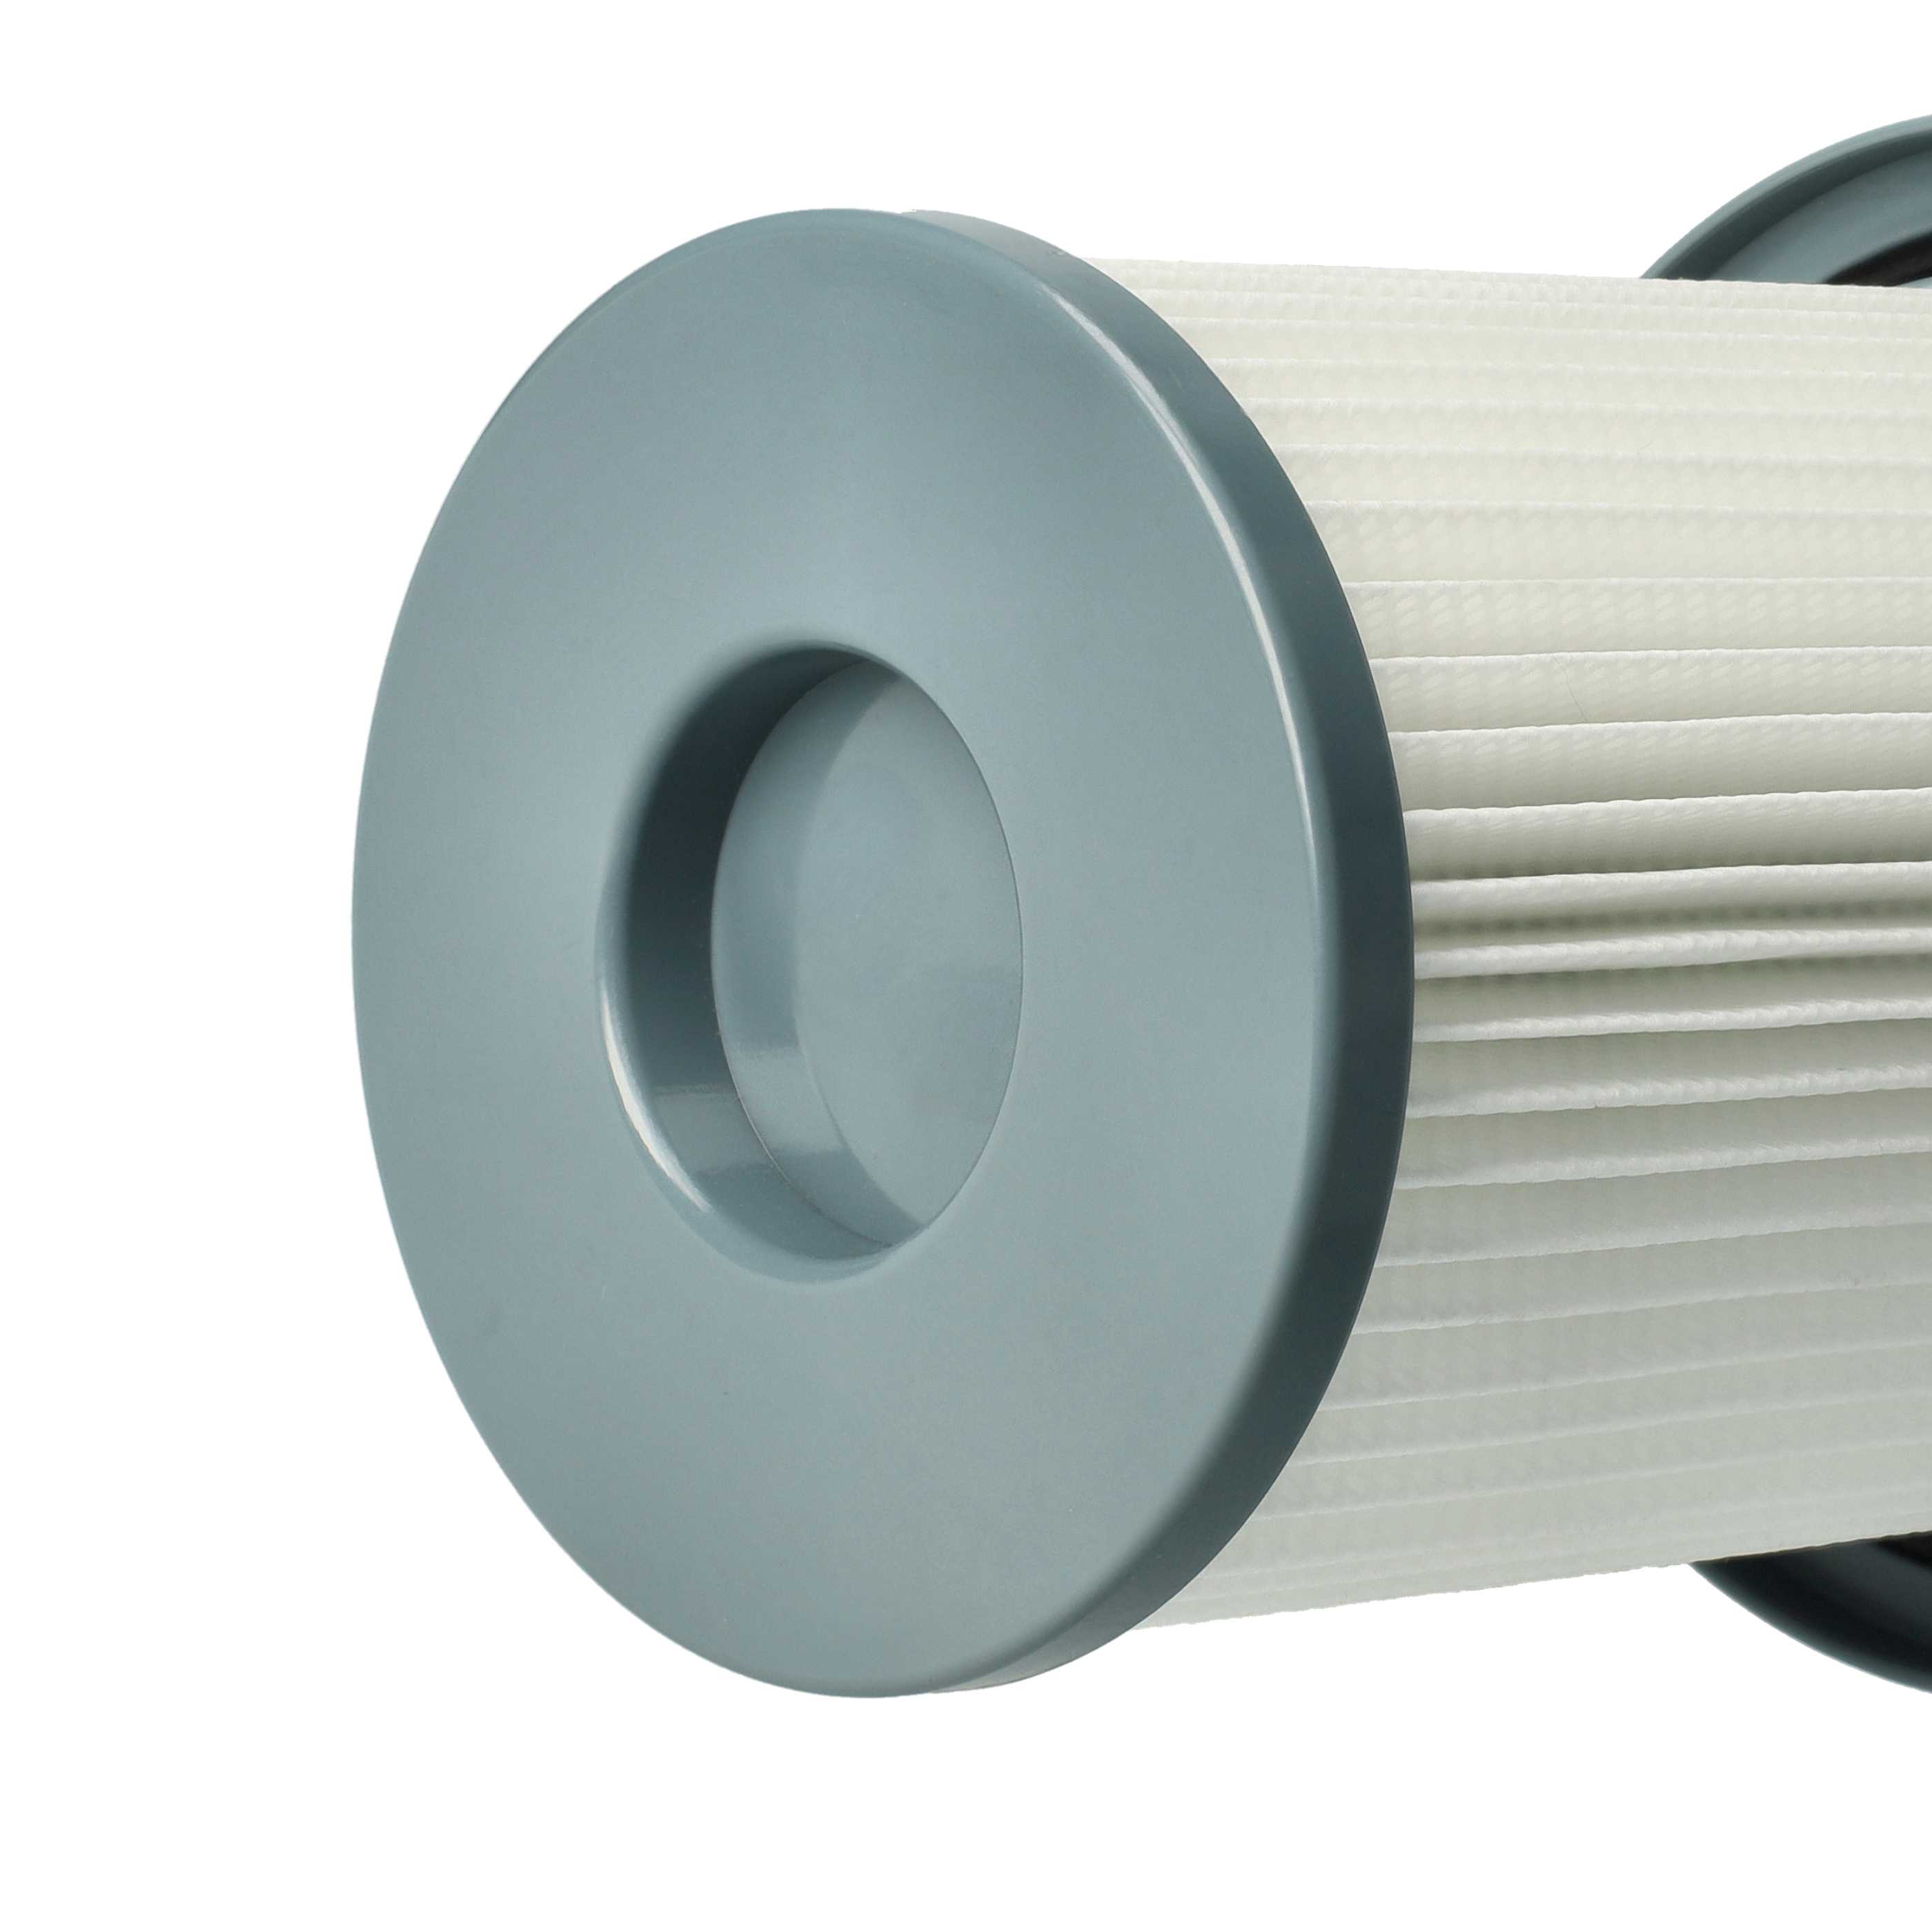 Filtre remplace Philips 432200909790, 432200493320 pour aspirateur - filtre HEPA